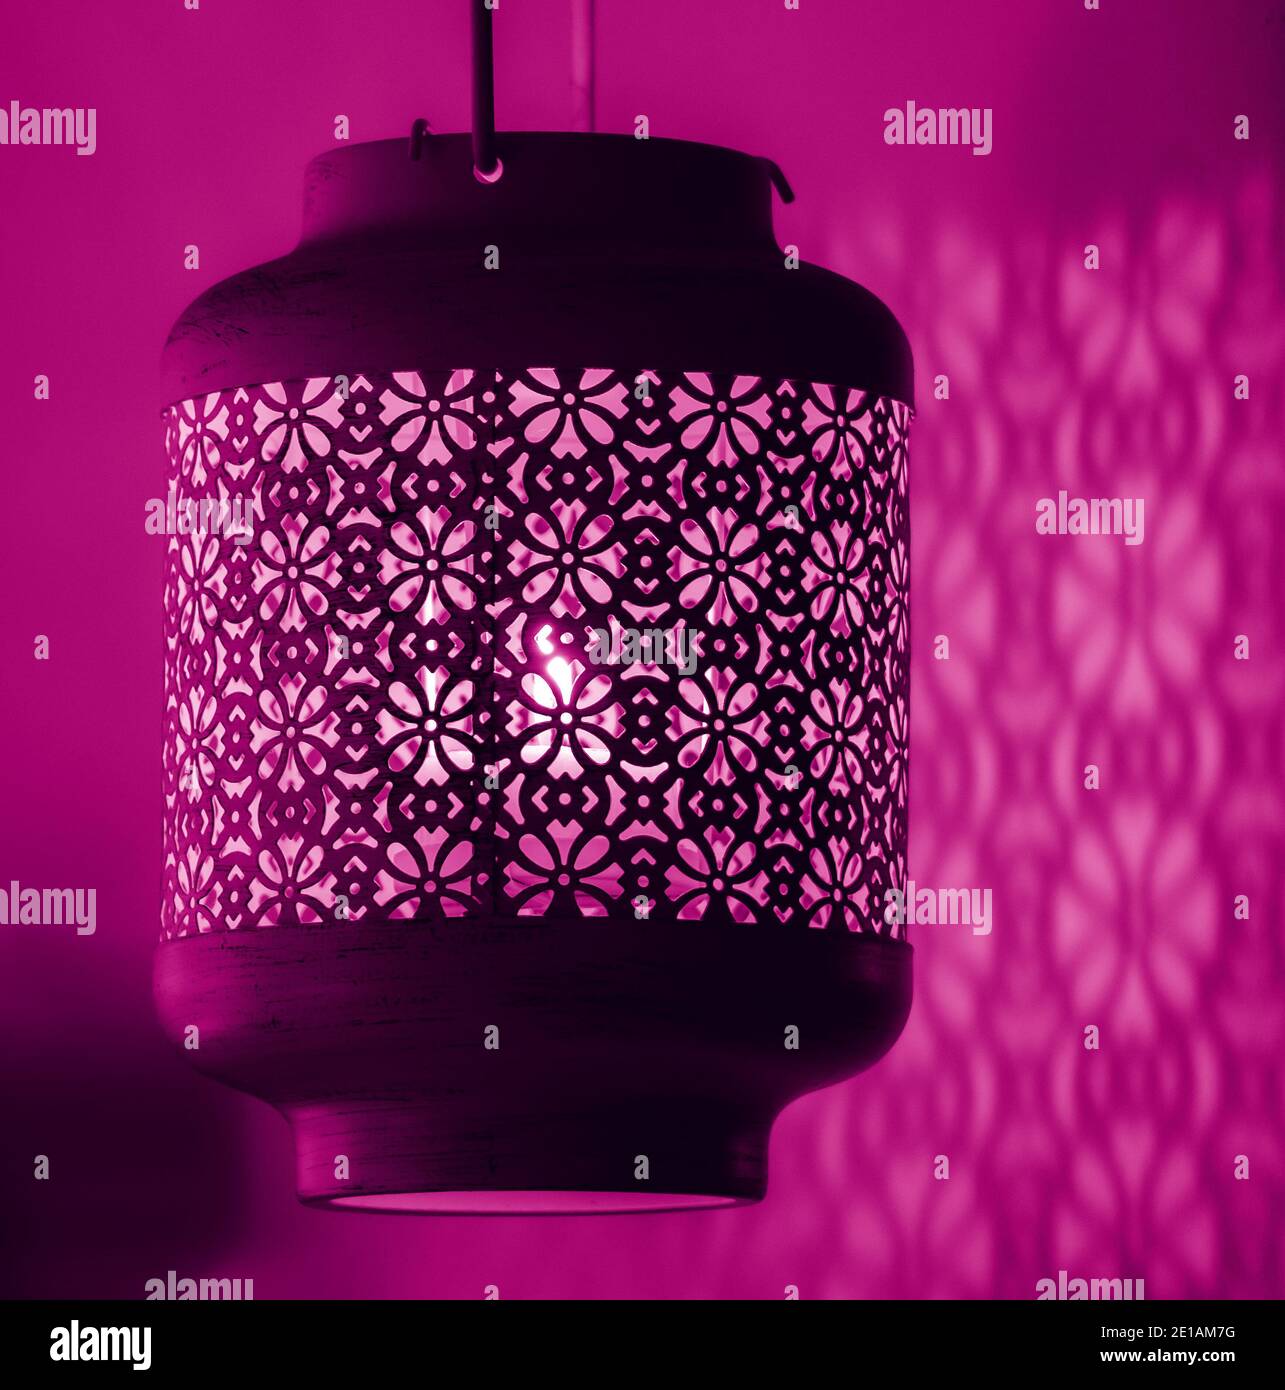 Kerzenlicht Lampe mit schönen detaillierten antiken Mustern Designs Gießen Schatten über der nahen Wand Stockfoto